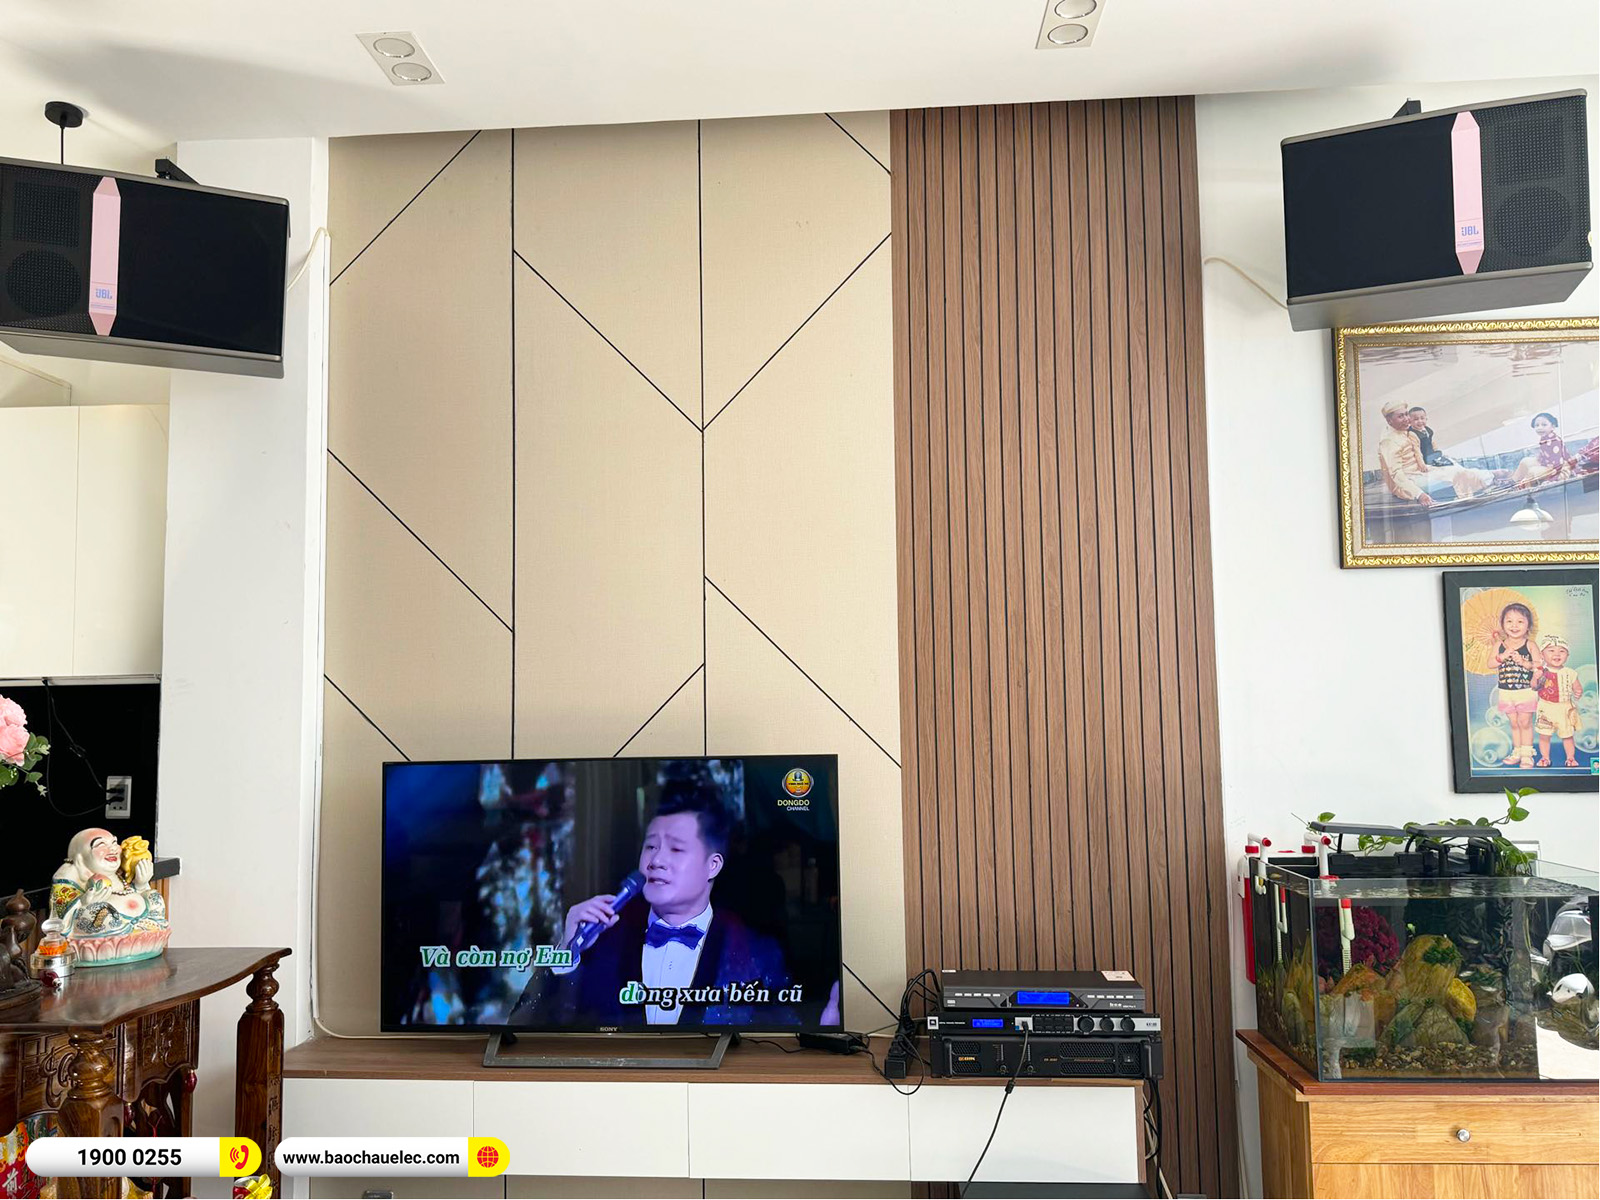 Lắp đặt dàn karaoke JBL hơn 22tr cho cô Oanh tại Đà Nẵng